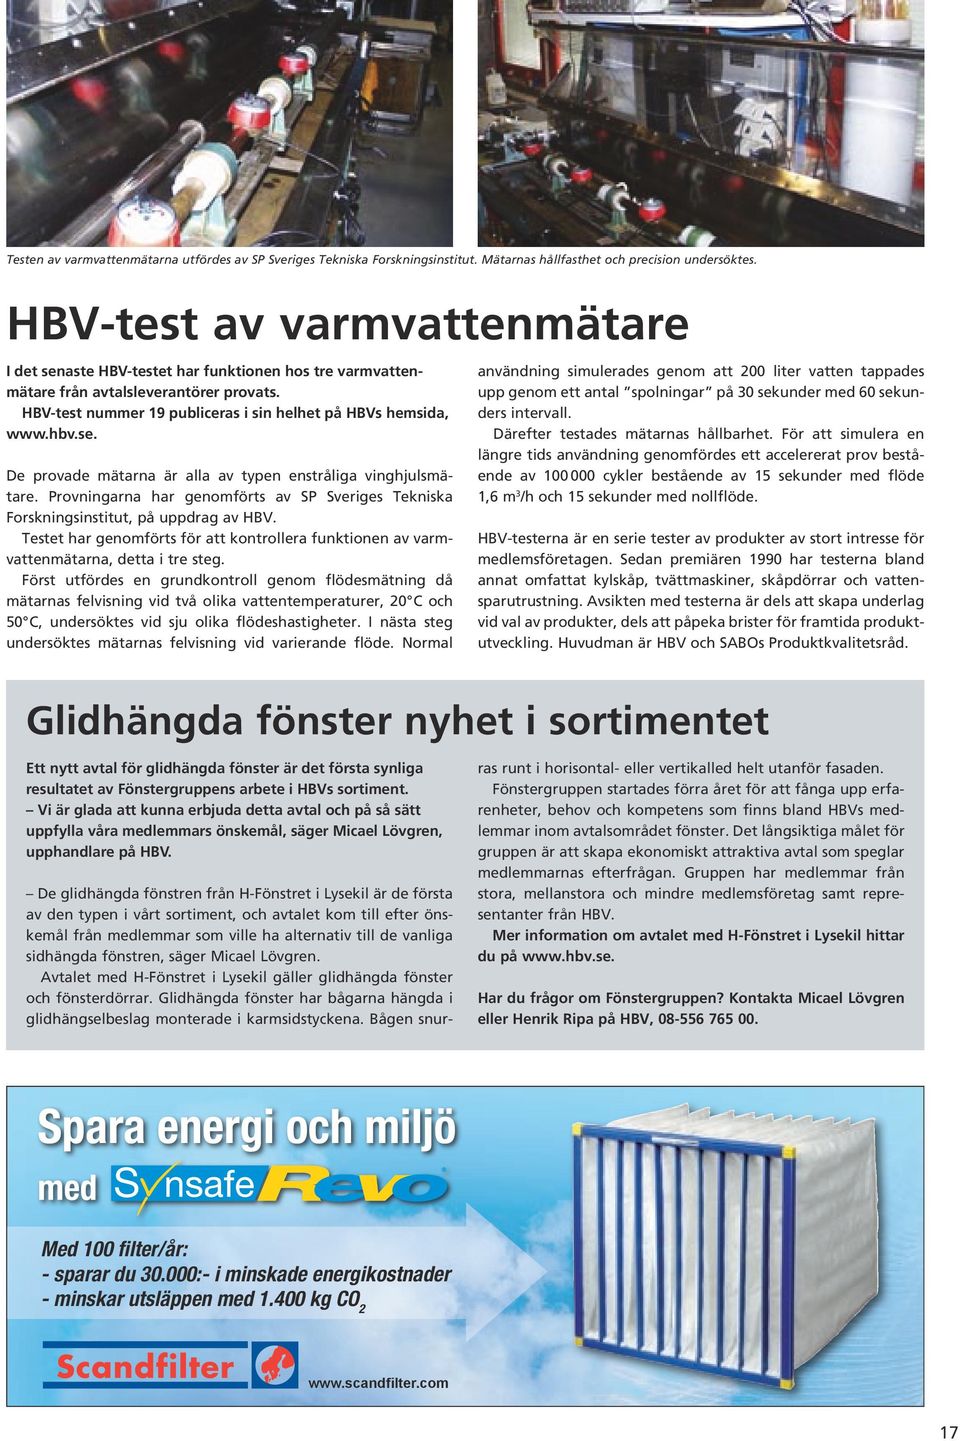 Provningarna har genomförts av SP Sveriges Tekniska Forskningsinstitut, på uppdrag av HBV. Testet har genomförts för att kontrollera funktionen av varmvattenmätarna, detta i tre steg.